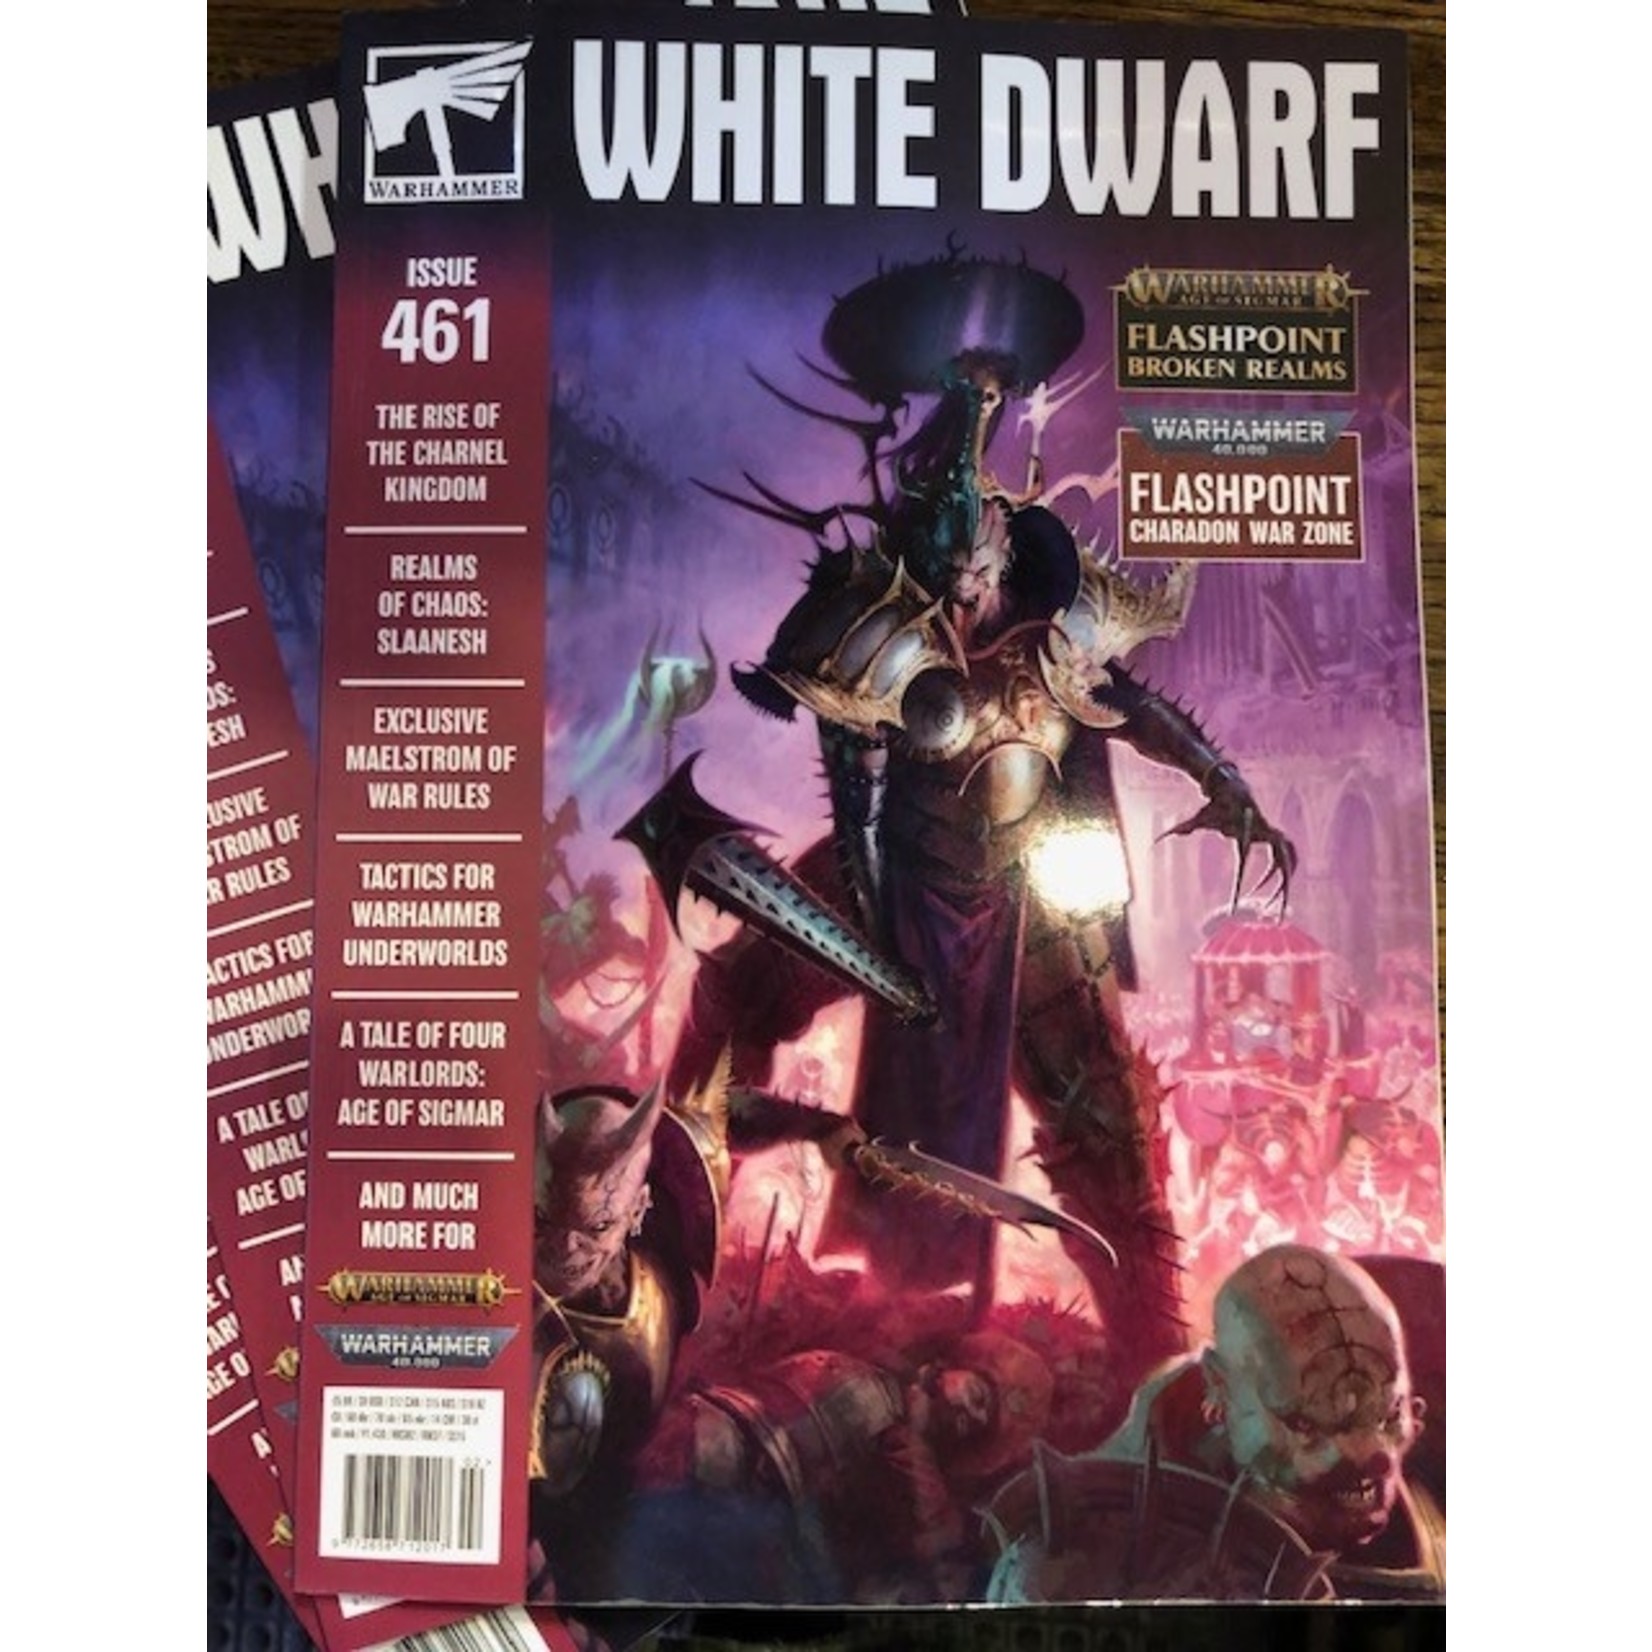 White Dwarf #461